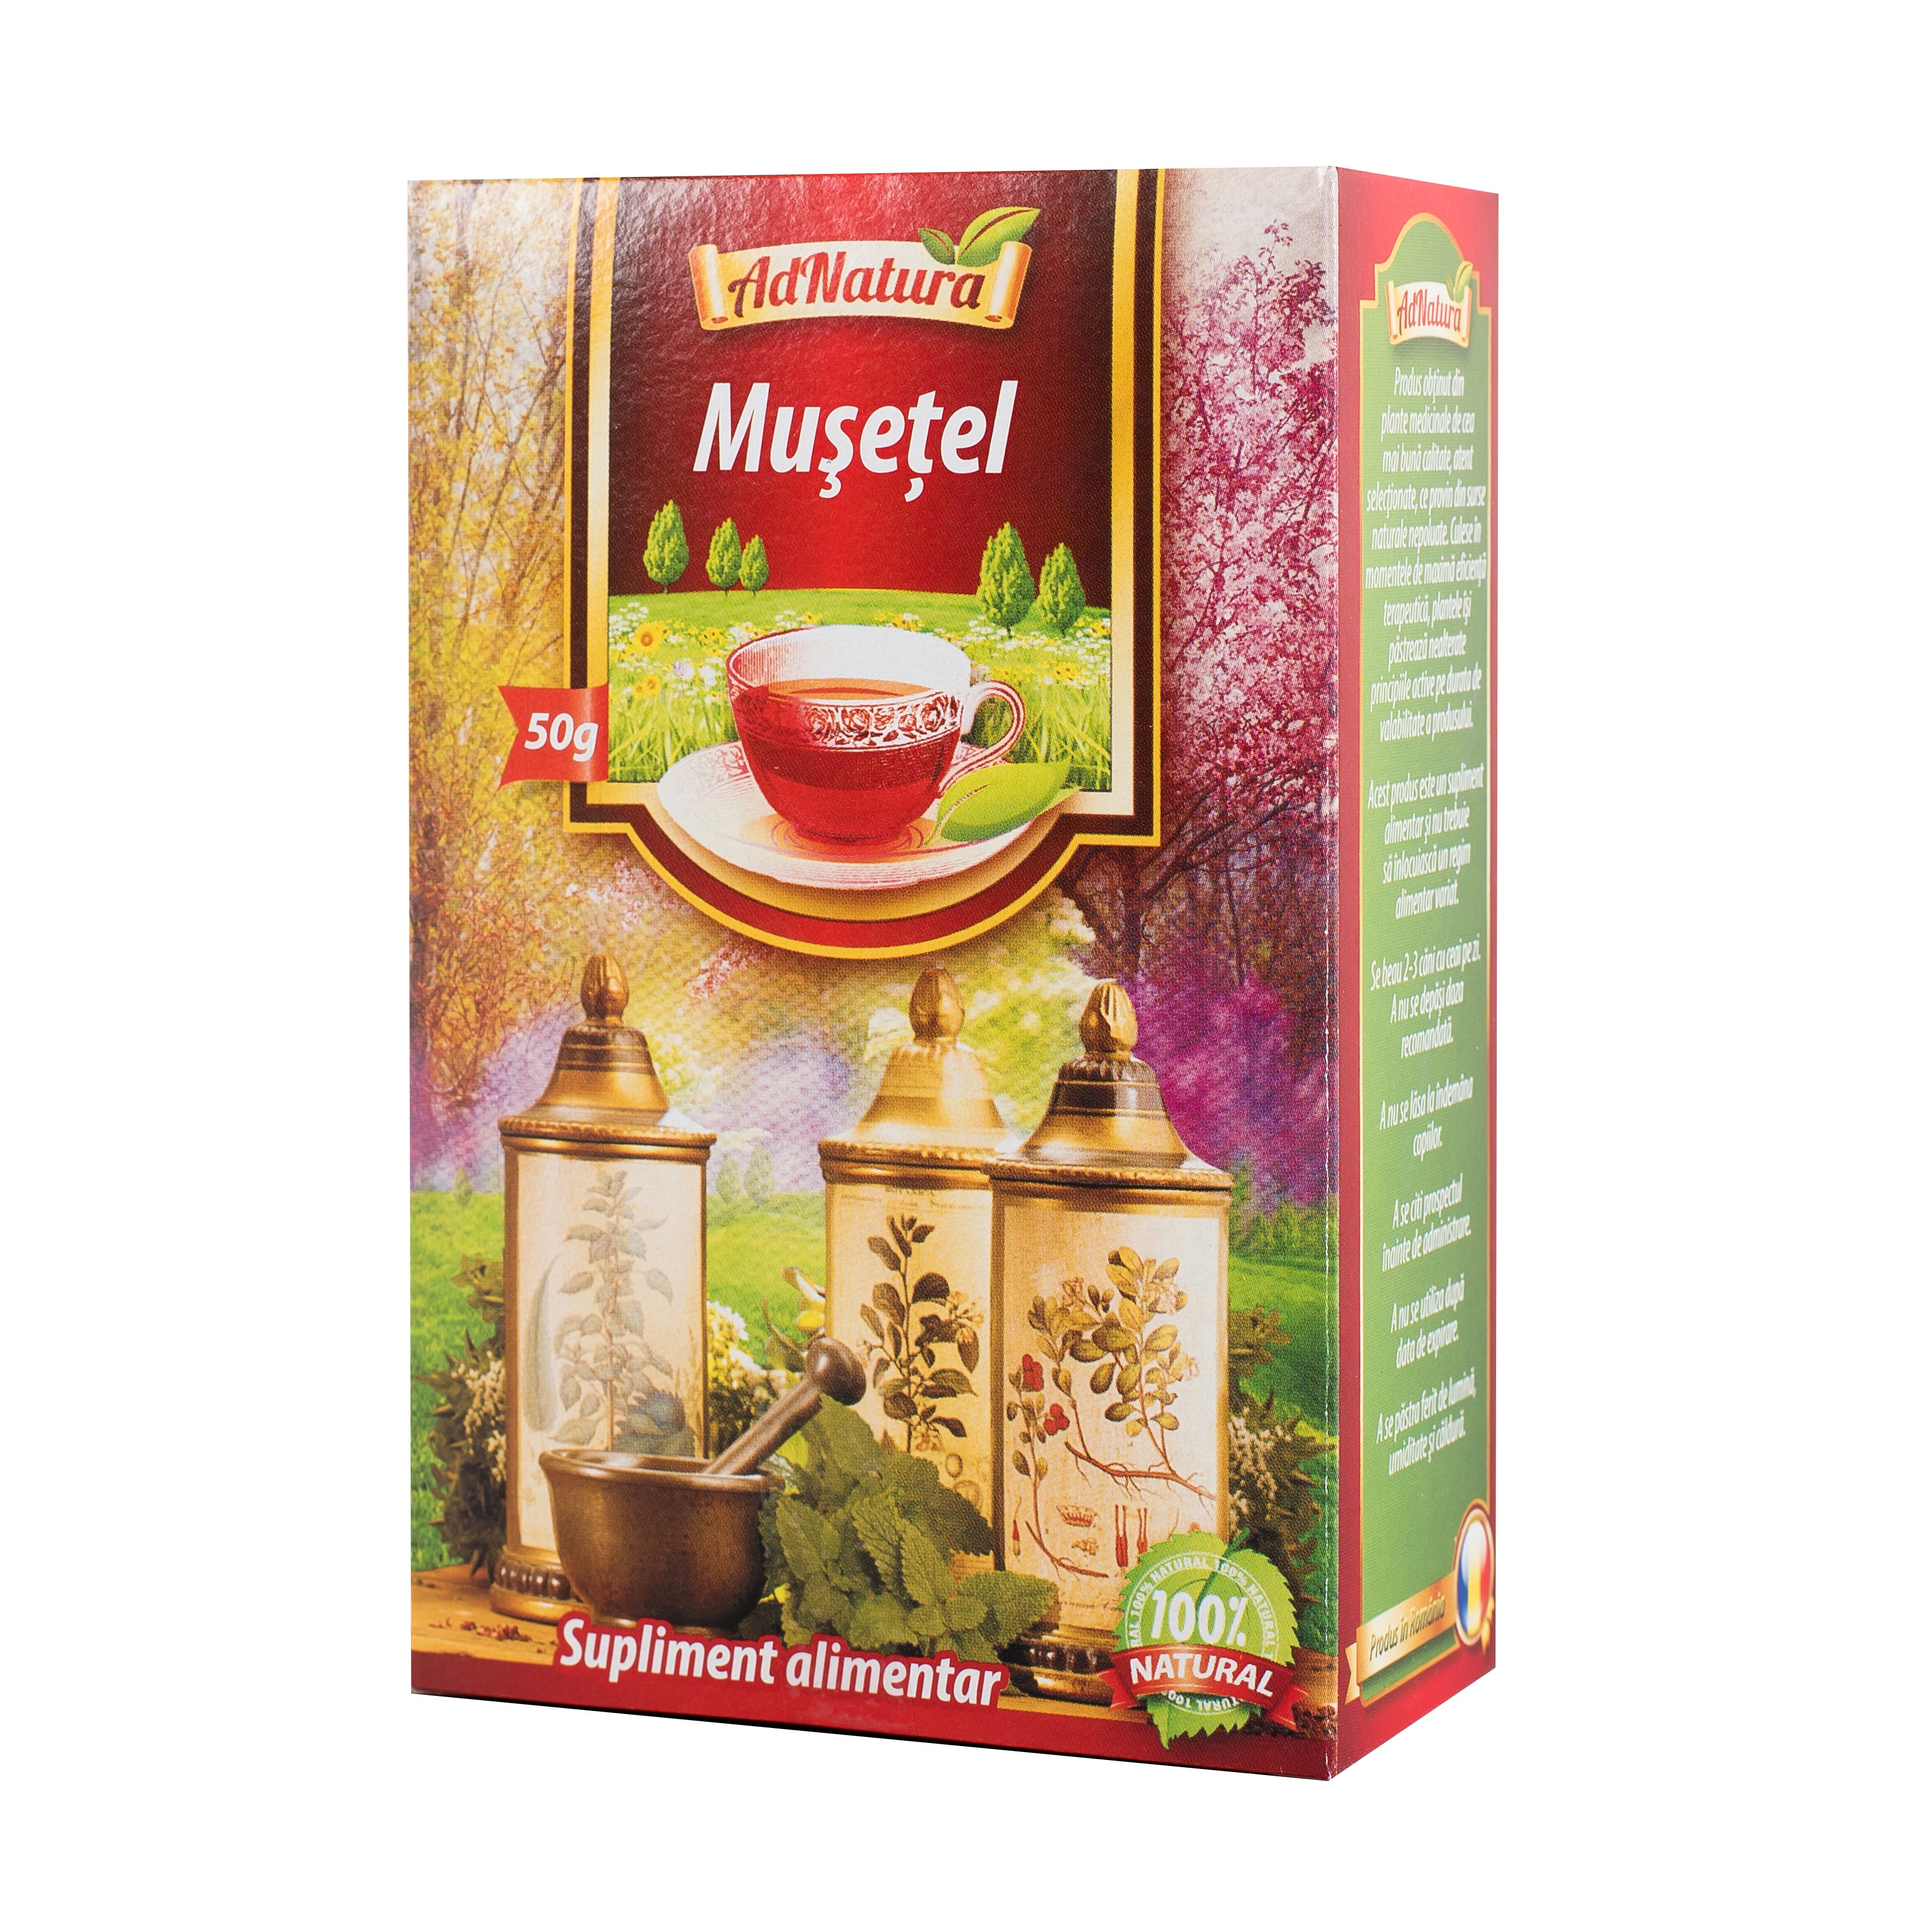 Ceaiul mate este cel care te ajuta sa slabesti - southparkfestival.nl